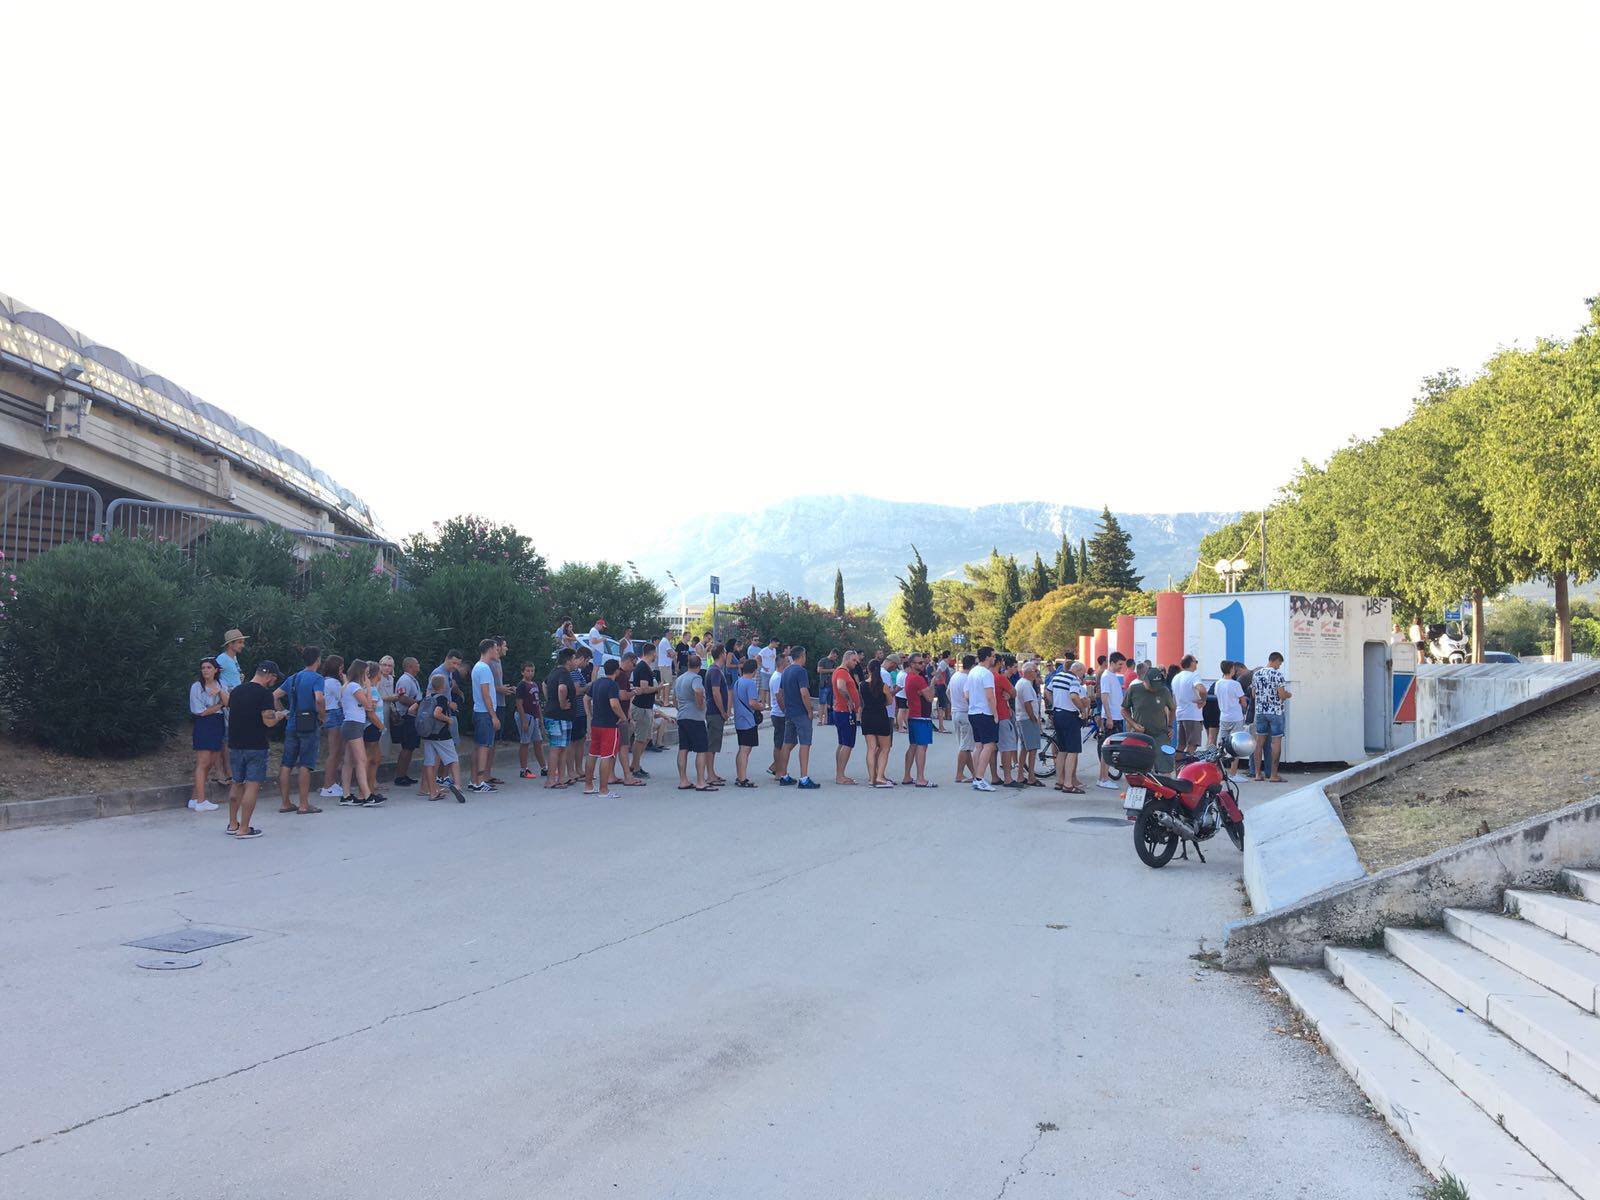 Hajdukovci navalili po ulaznice, Kos moli navijače da pripaze...